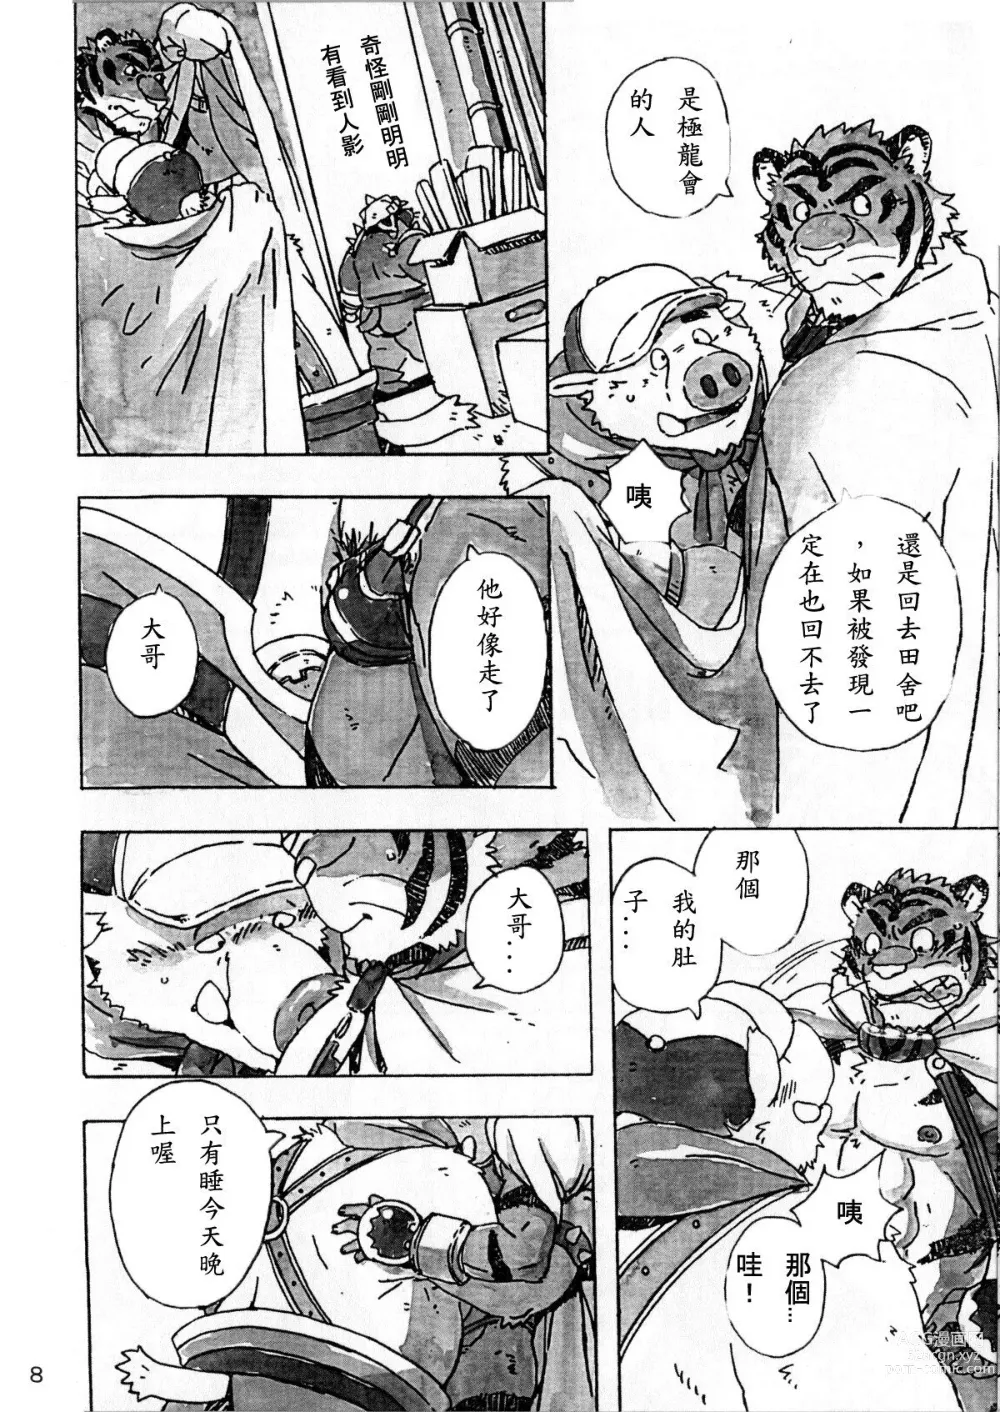 Page 9 of doujinshi Choujuu Gasshin Build Tiger 6